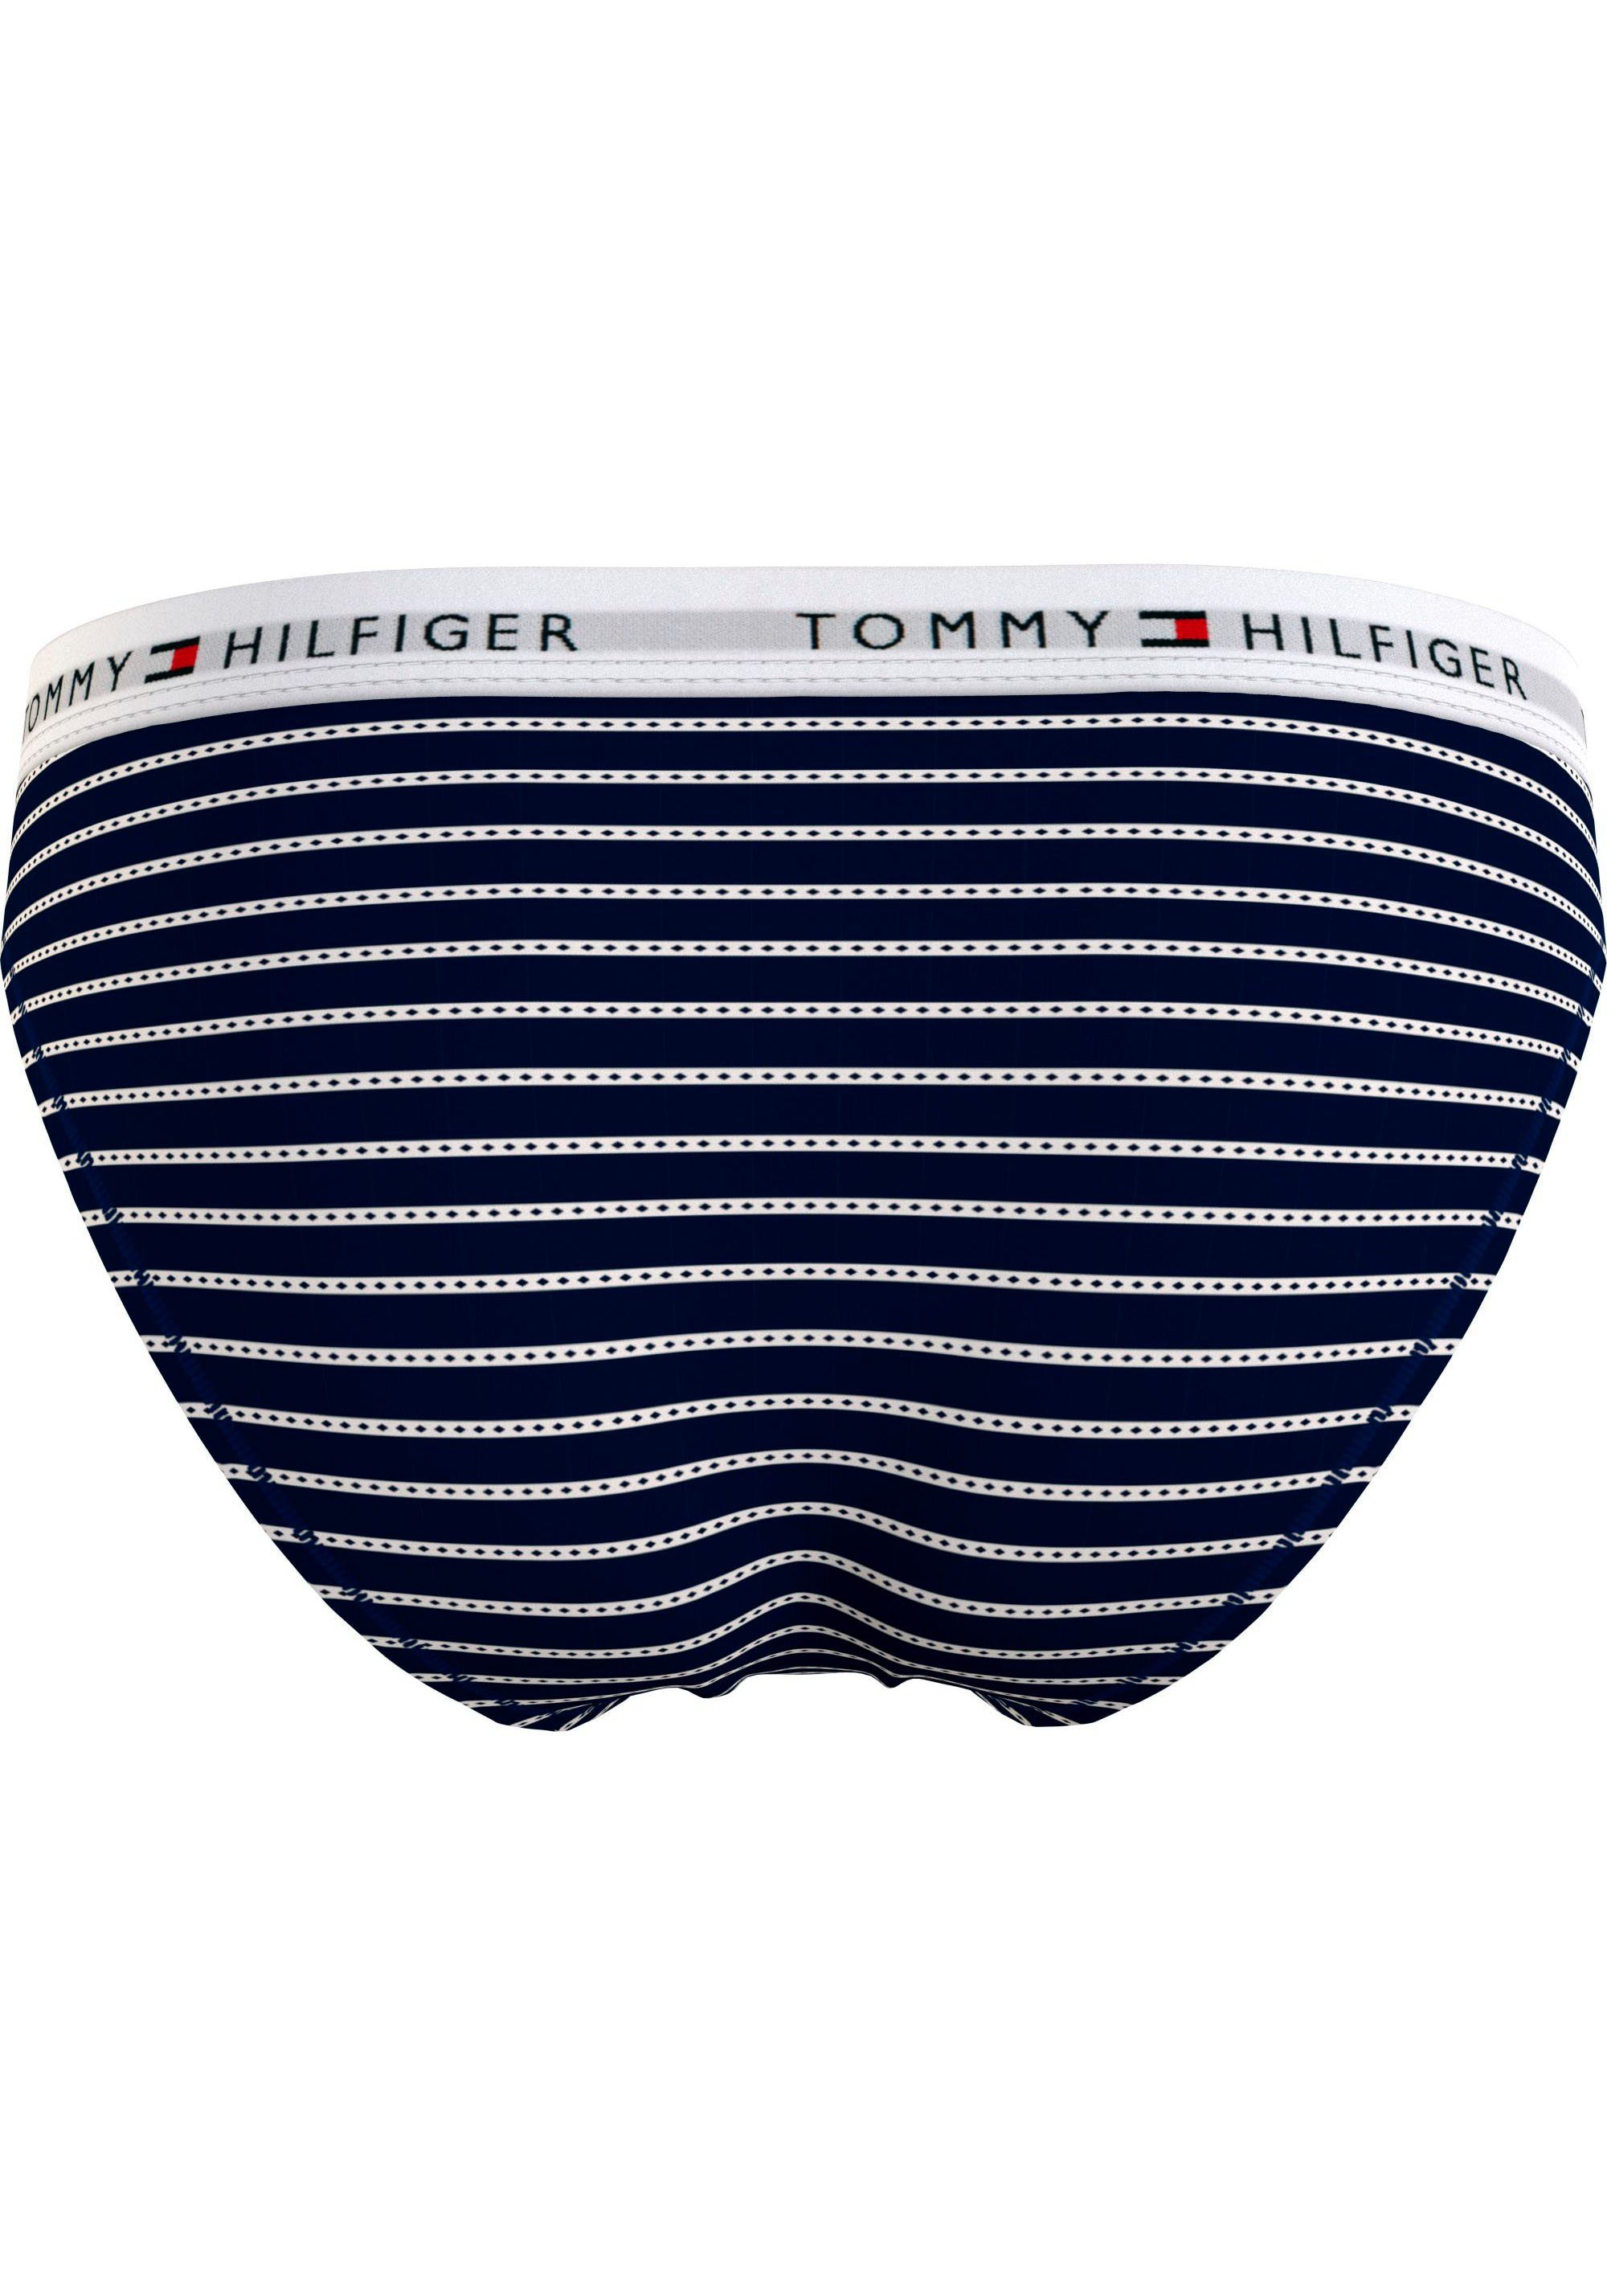 Argyle_Stripe_Desert_Sky Hilfiger Bikinislip Tommy Hilfiger Underwear Logobund mit BIKINI PRINT Tommy